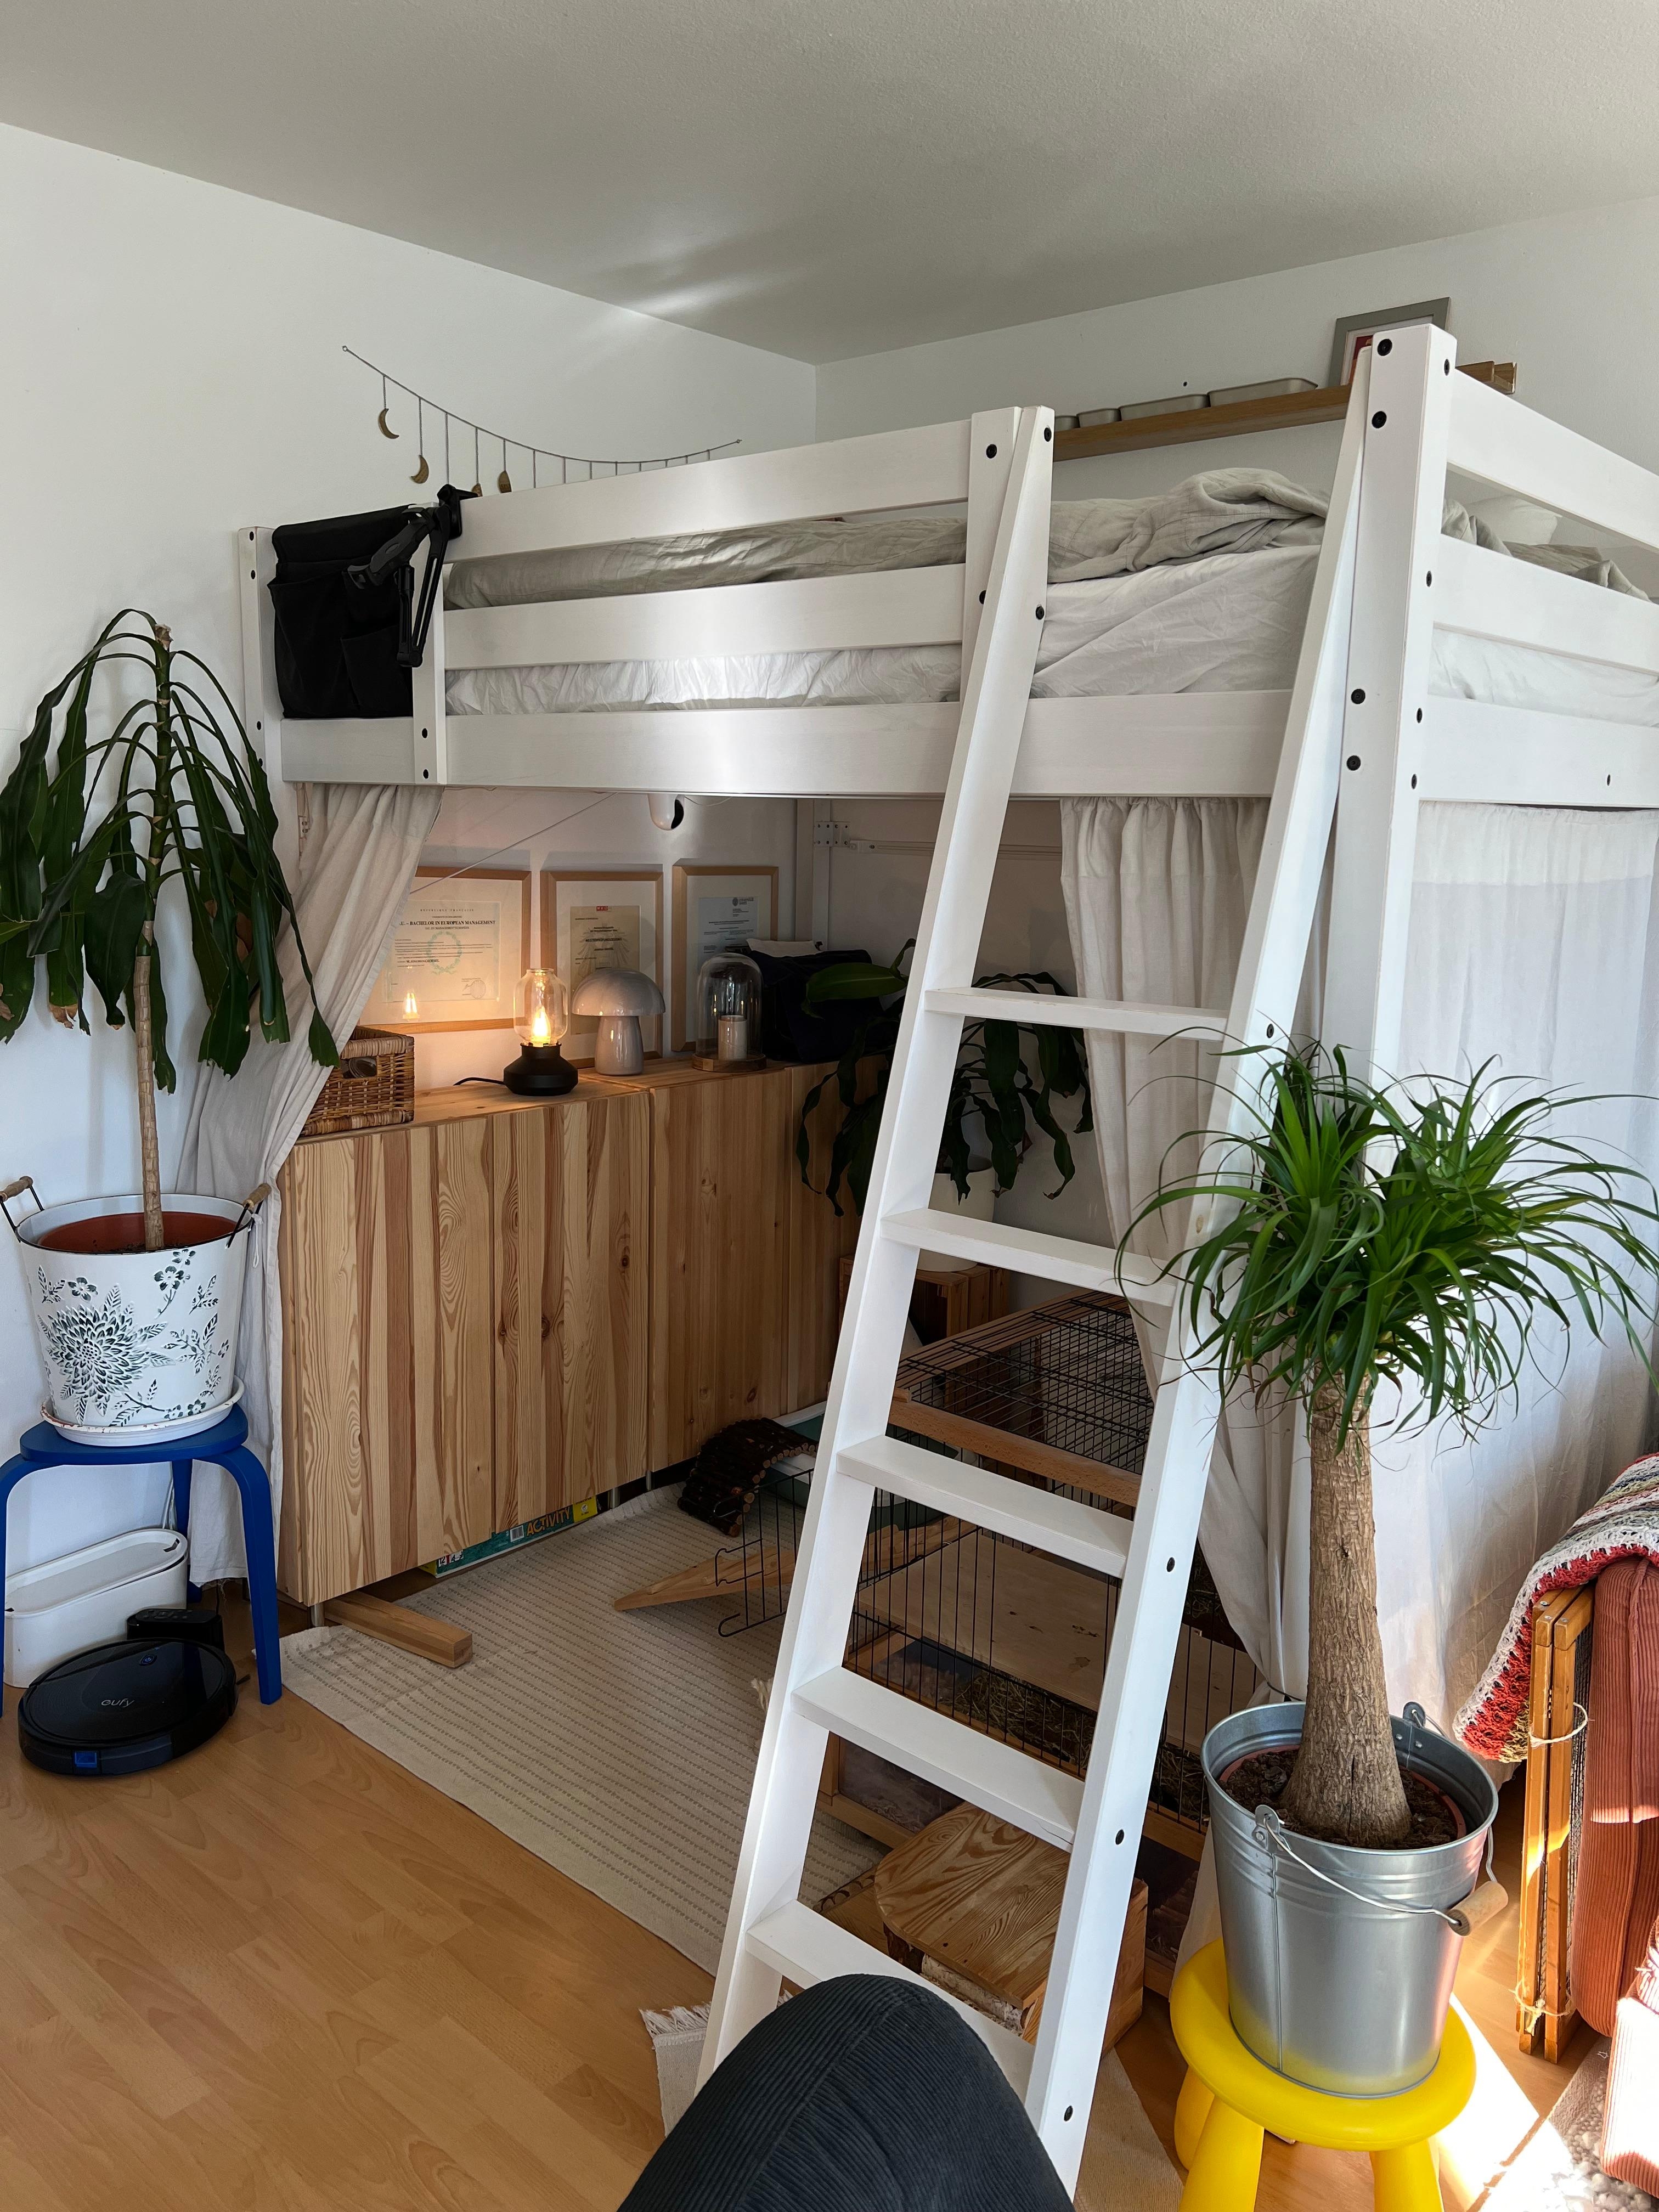 Schlafzimmer im Tinyloft 
#schlafzimmer #kleinewohnung #hochbett #ivar #ikea #stockbett #kleinaberfein #scandi